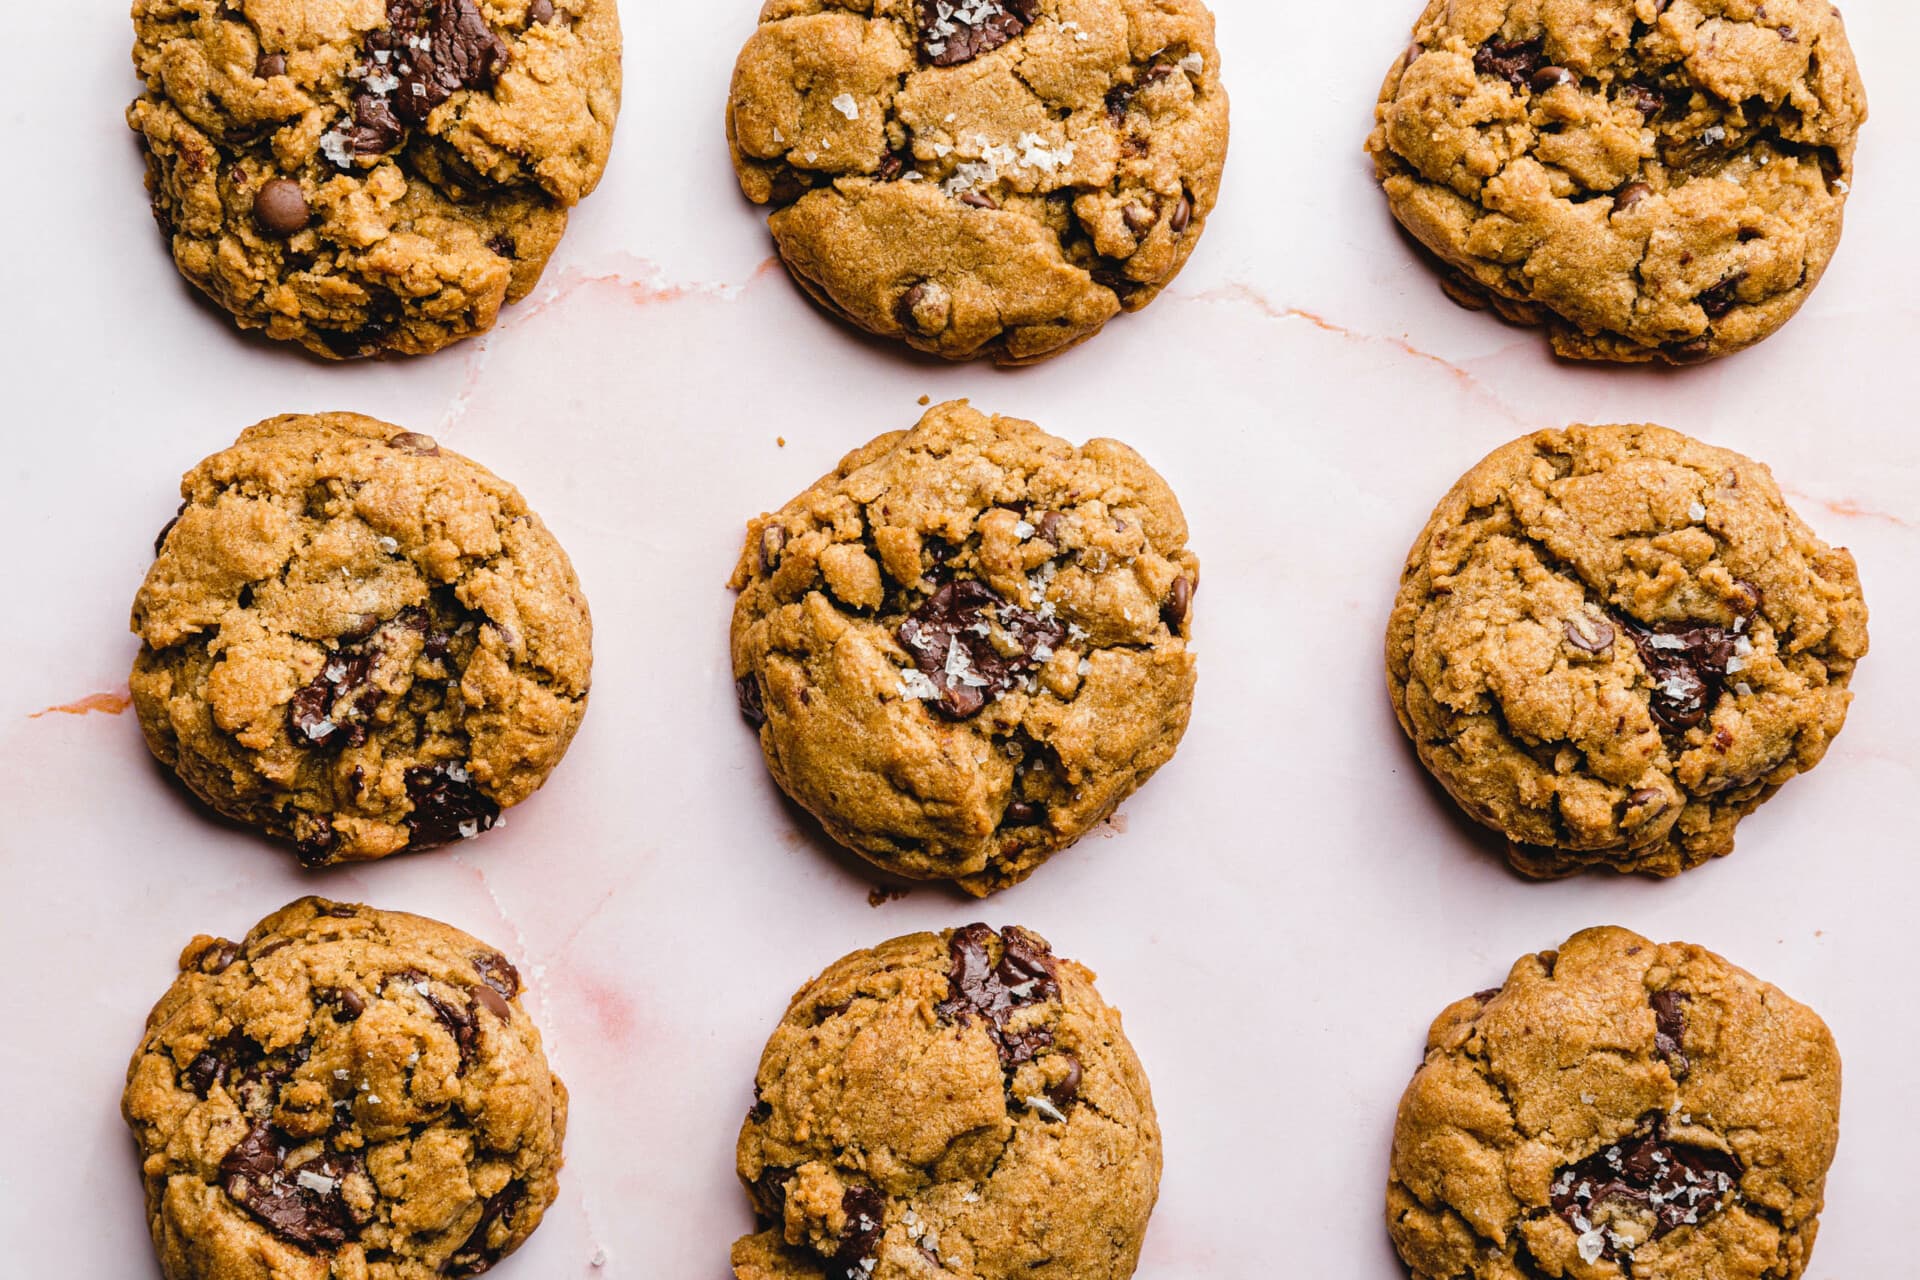 Vegane Chocolate Chip Cookies · Eat this! Foodblog für gesunde vegane ...